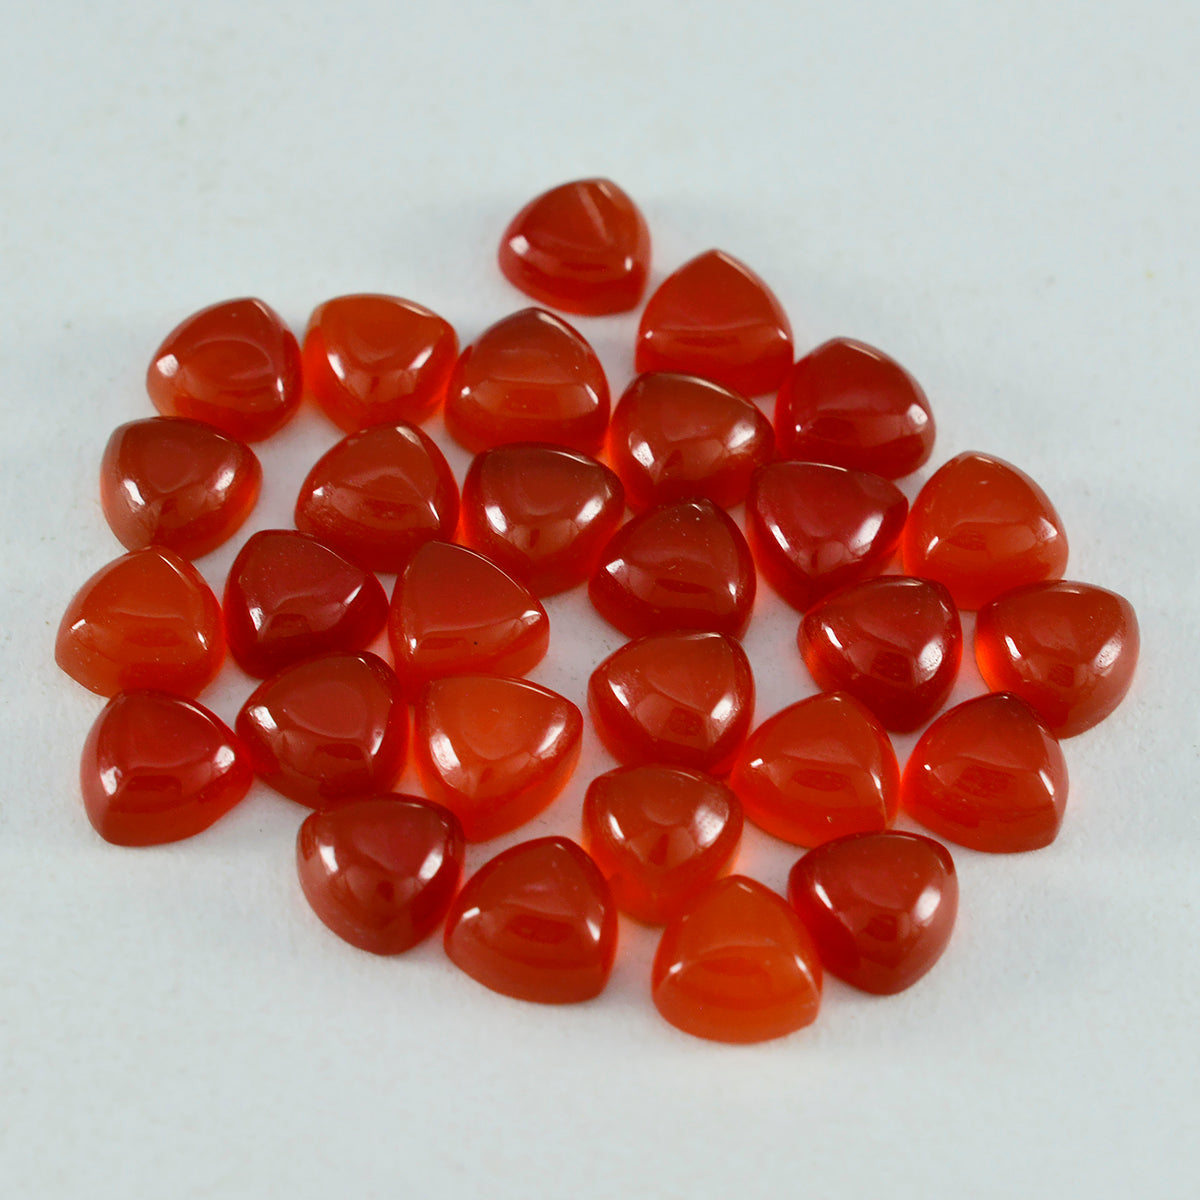 riyogems 1pc cabochon onyx rouge 5x5 mm forme trillion excellente qualité pierre précieuse en vrac